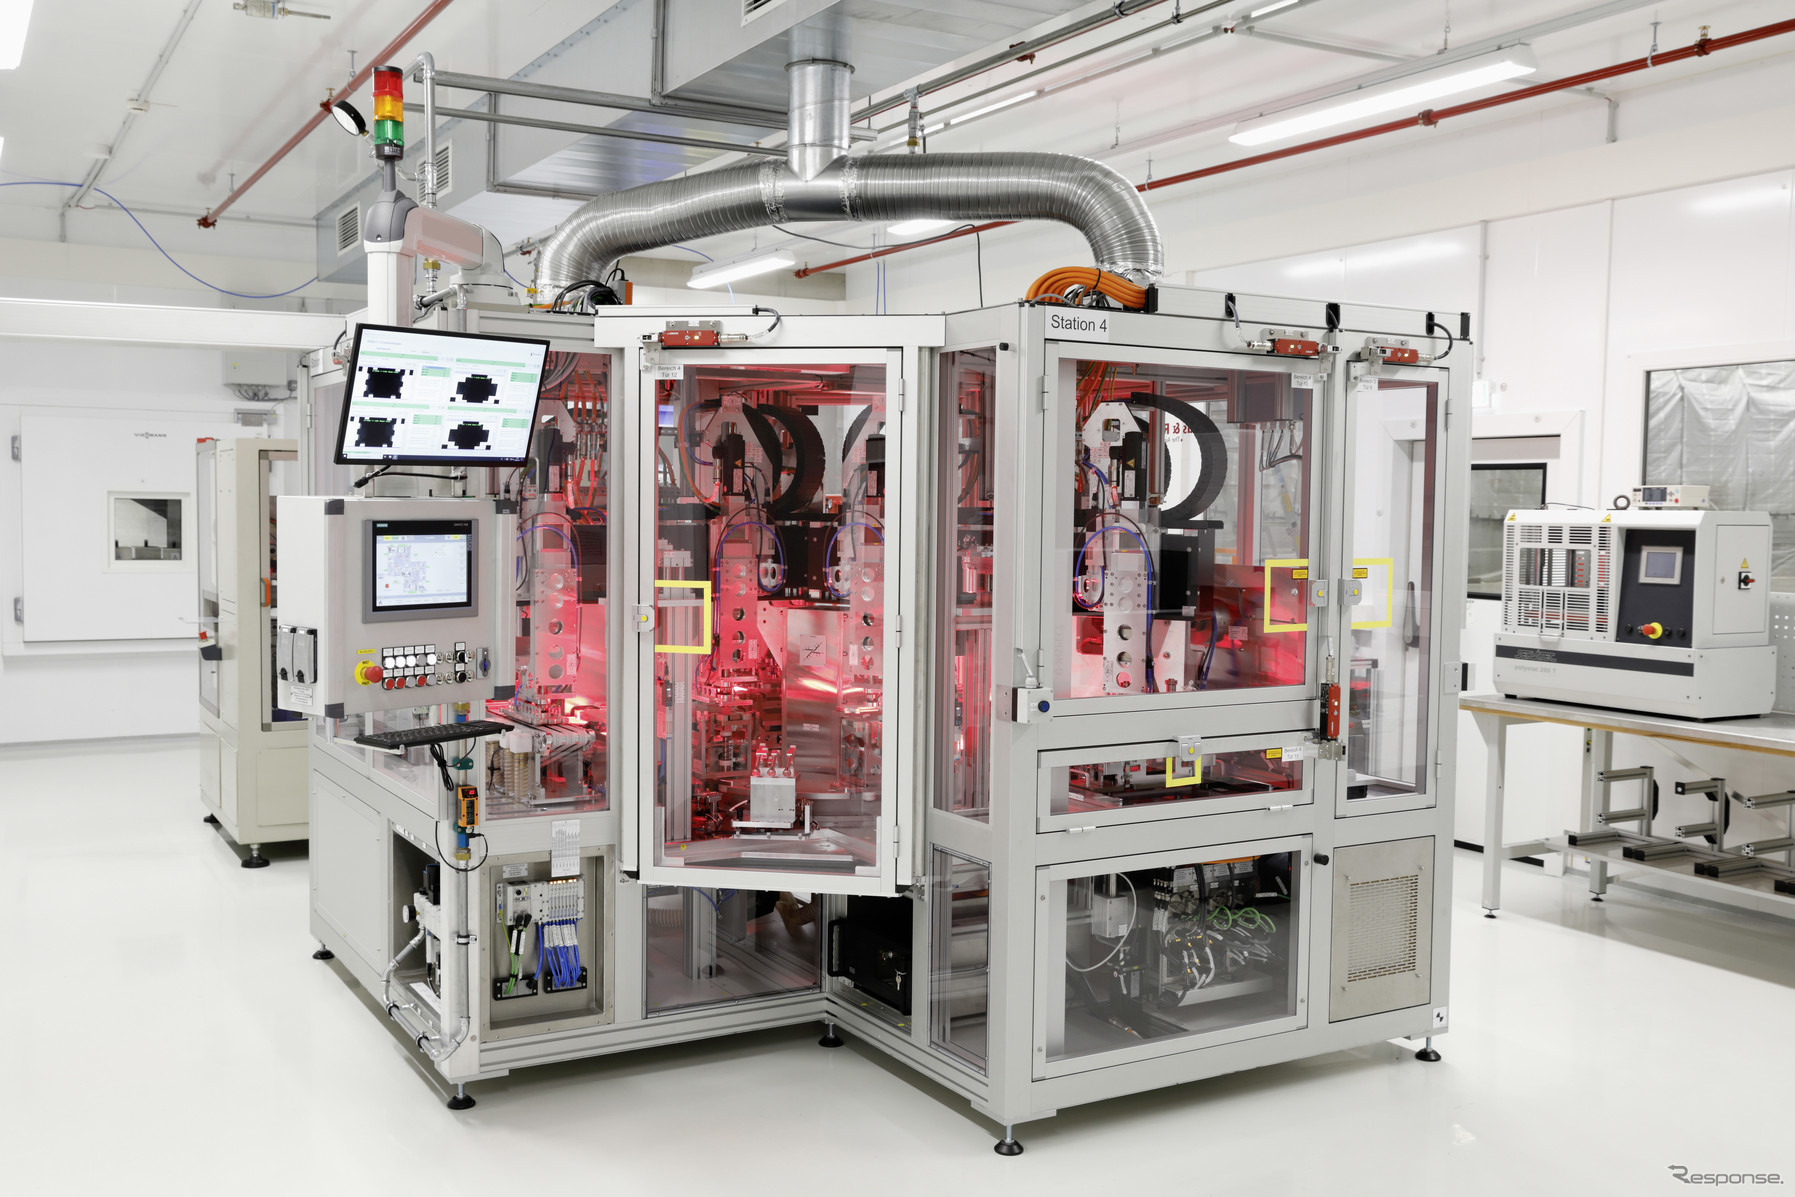 VWグループがドイツで電動車向けのリチウムイオン電池の開発と生産を開始